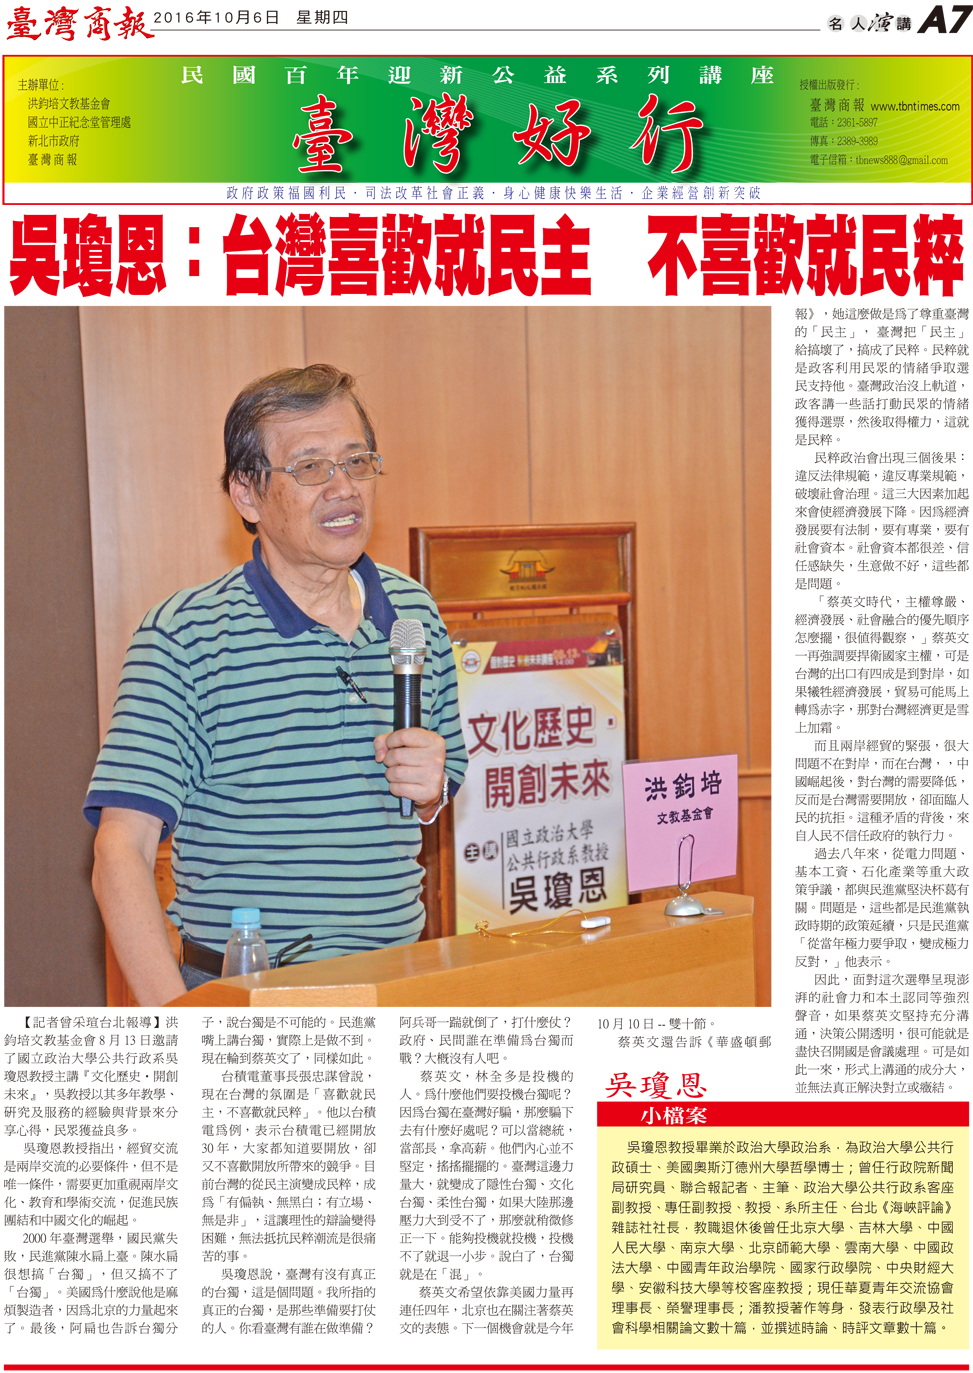 吳瓊恩:台灣喜歡就民主 不喜歡就民粹